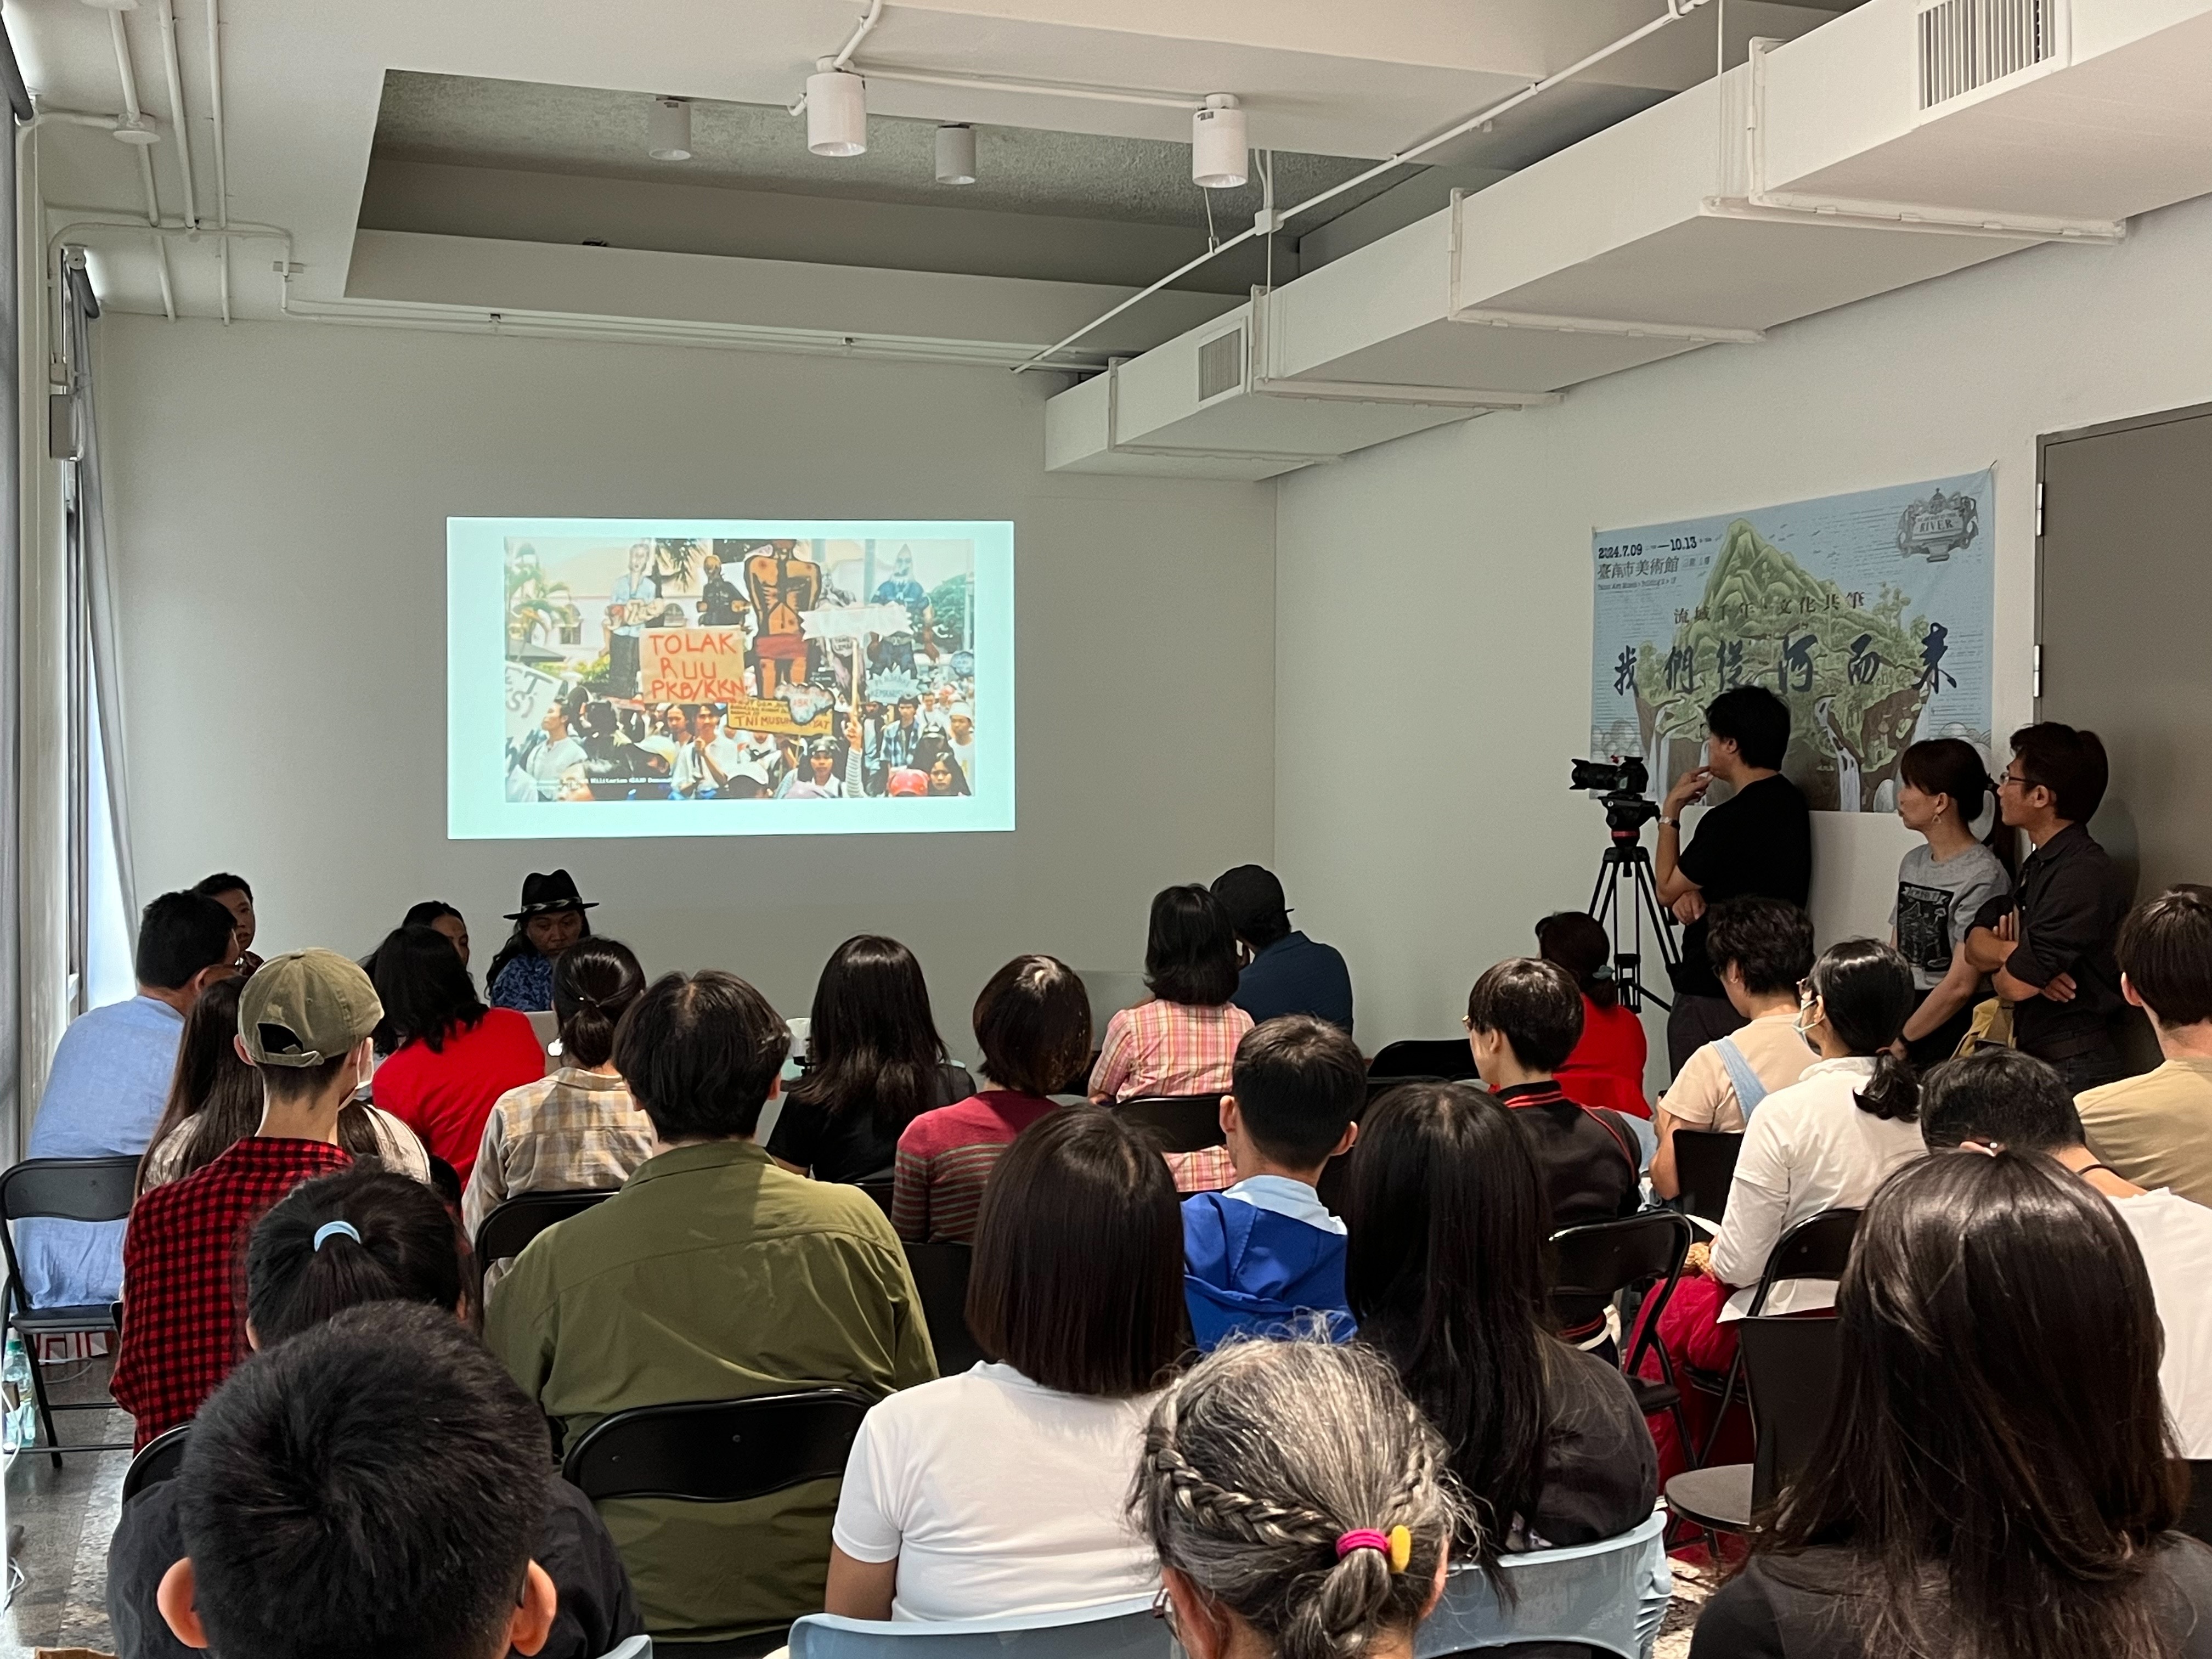 印尼藝術團體交流版畫工作坊成果發表  臺南400文化治理特展凸顯民眾參與的共筆精神